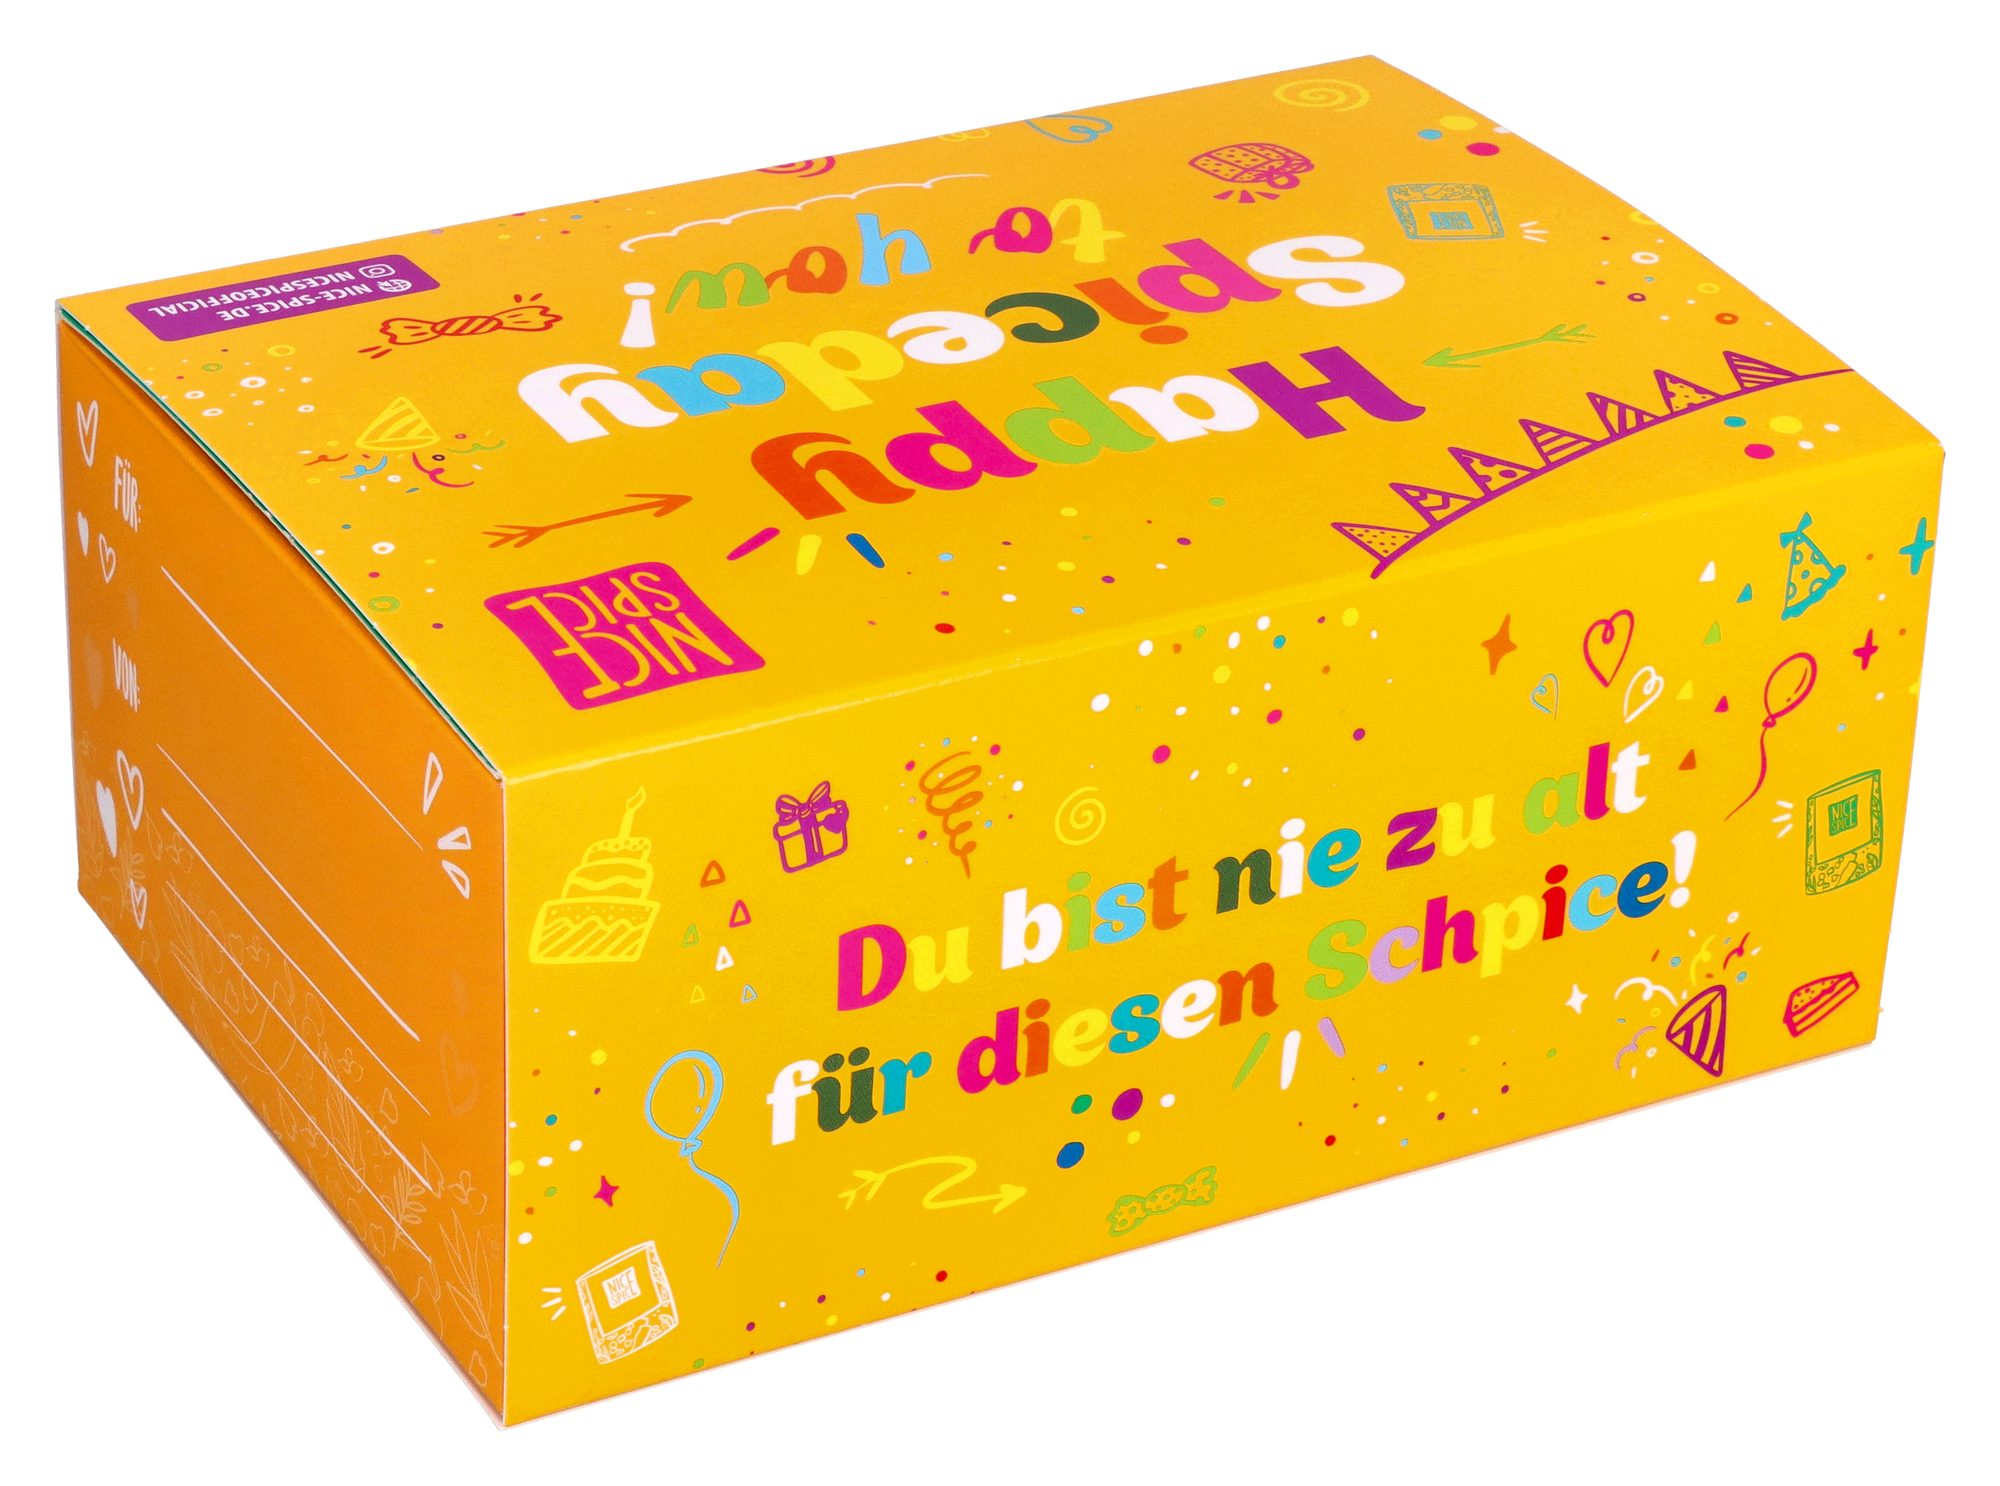 NICE SPICE gelbe Geburtstagsbox ohne Hintergrund mit bunter Schrift